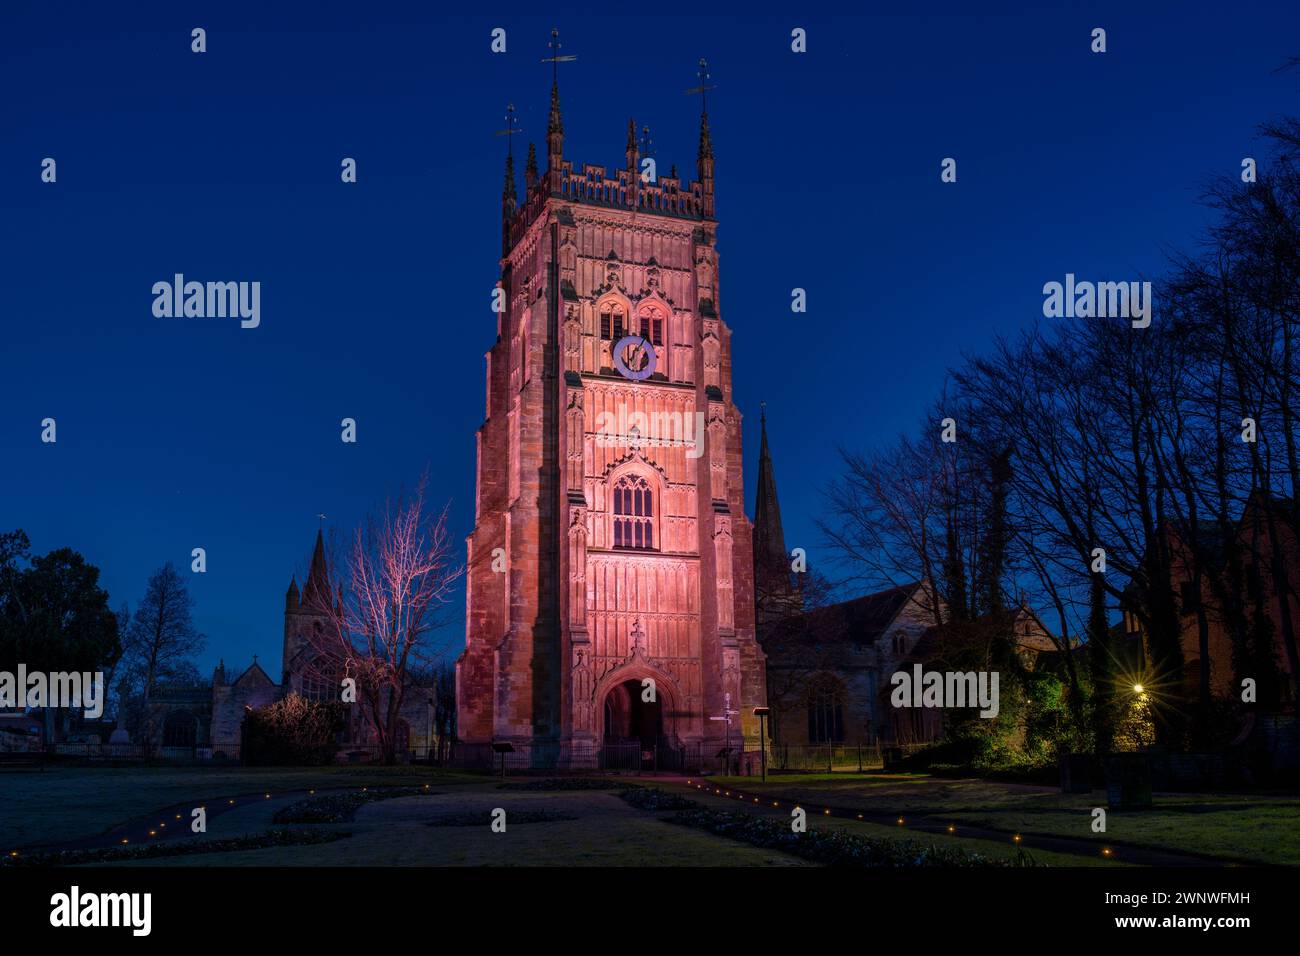 Le clocher d'Evesham s'est illuminé en mars avant l'aube. Evesham, Wychavon, Worchestershire, Angleterre Banque D'Images